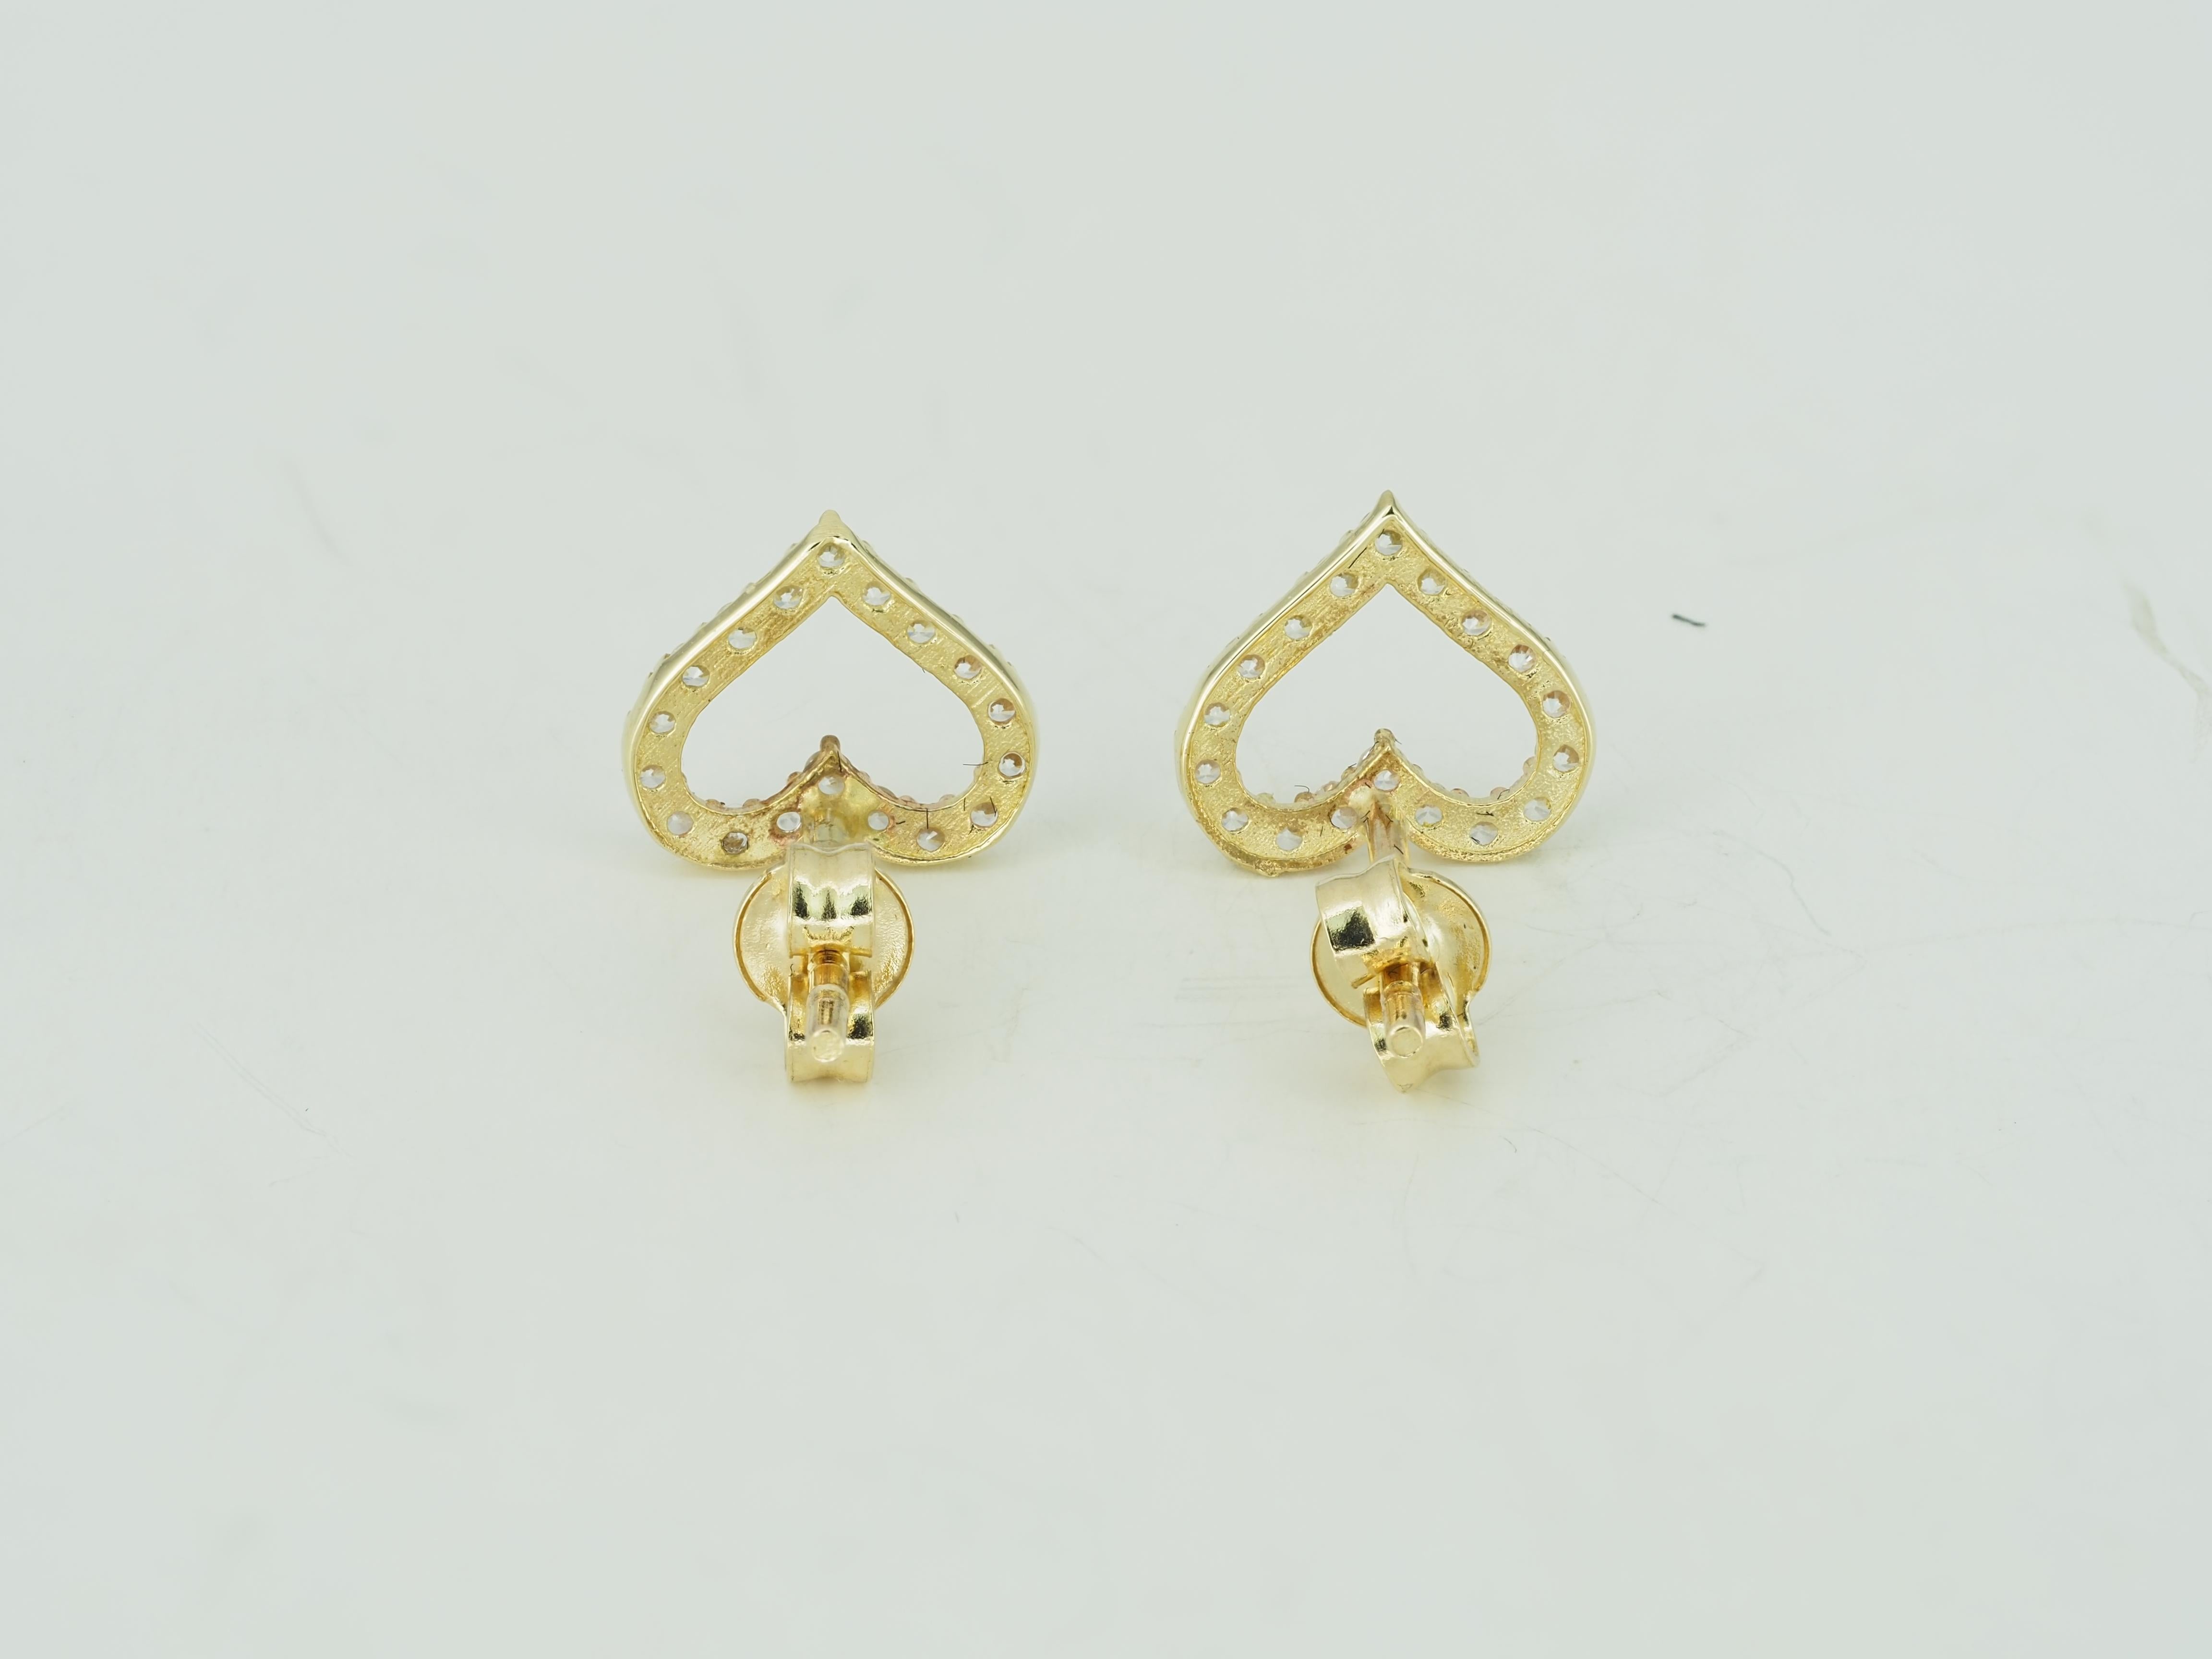 Round Cut Heart Earrings Studs in 14K Yellow Gold. Mini Heart-Shaped Stud Earrings! For Sale